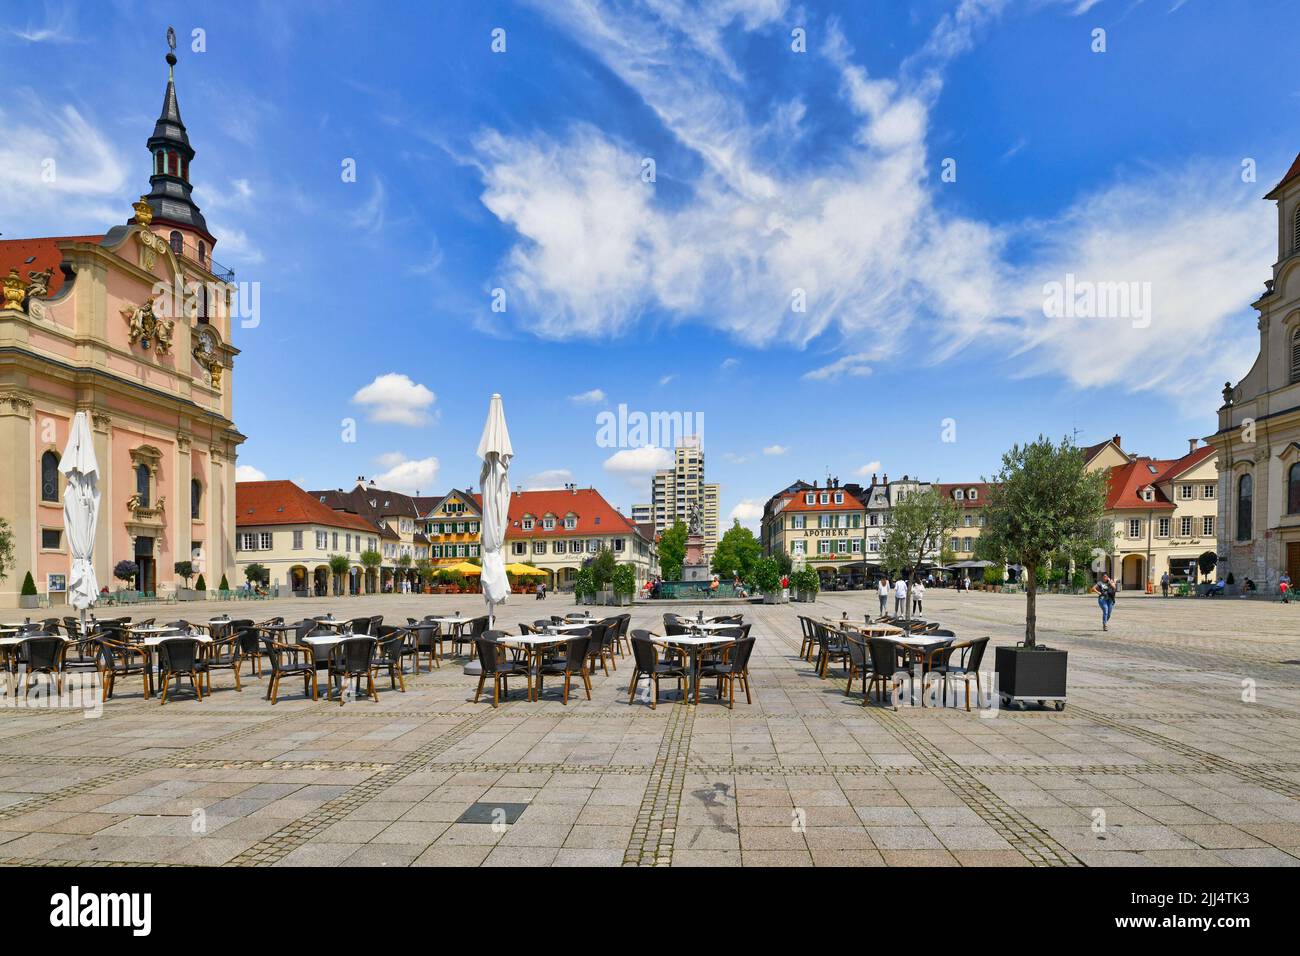 Ludwigsburg, Germania - Luglio 2022: Piazza del mercato con tavoli da ristorante all'aperto vuoti Foto Stock